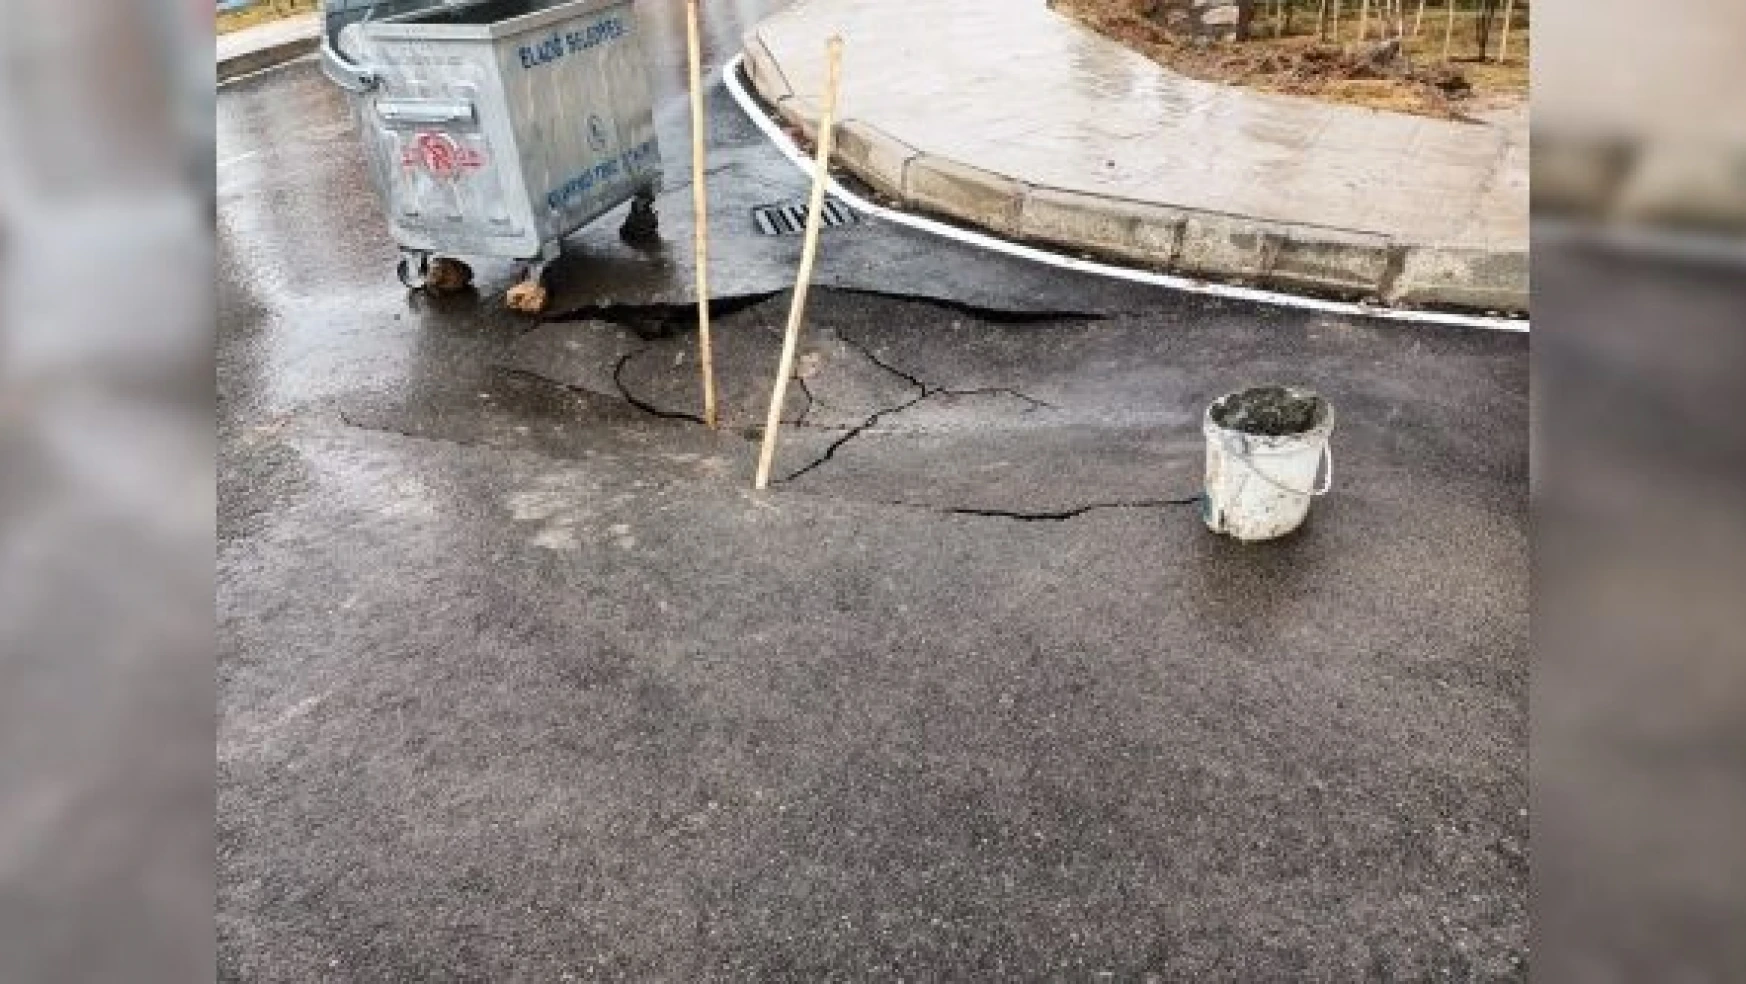 Elazığ'da aşırı yağışlar nedeniyle yol çöktü